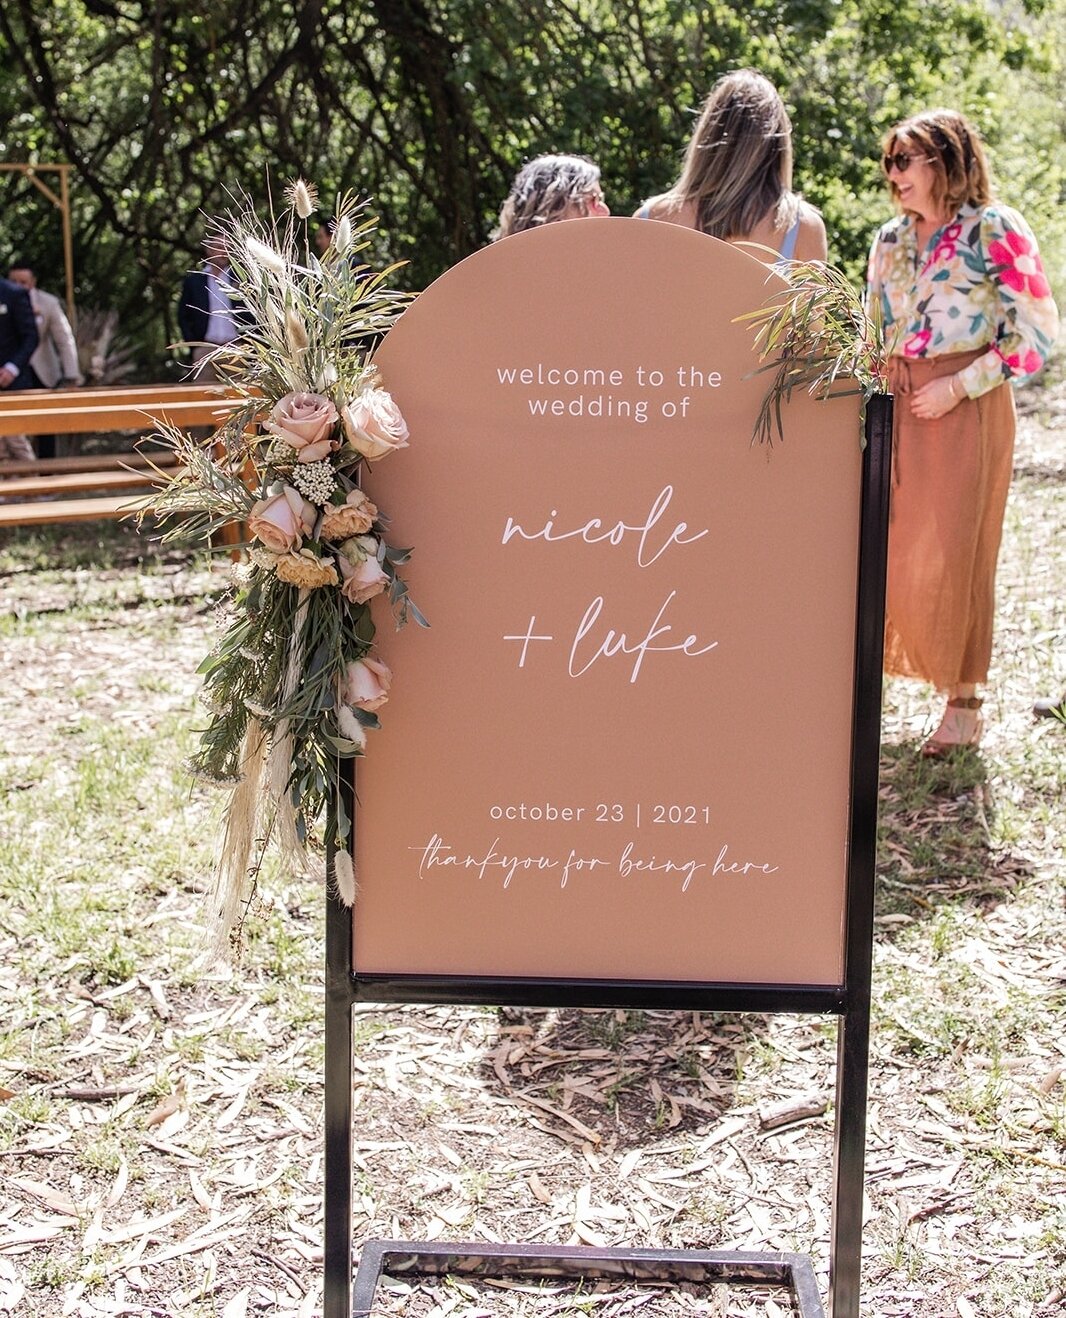 Bit of custom signage for Nicole &amp; Luke for ya Wednesday ❤️⁠
.⁠
📷️ @alyshasparks_photographer⁠
.⁠
.⁠
#littleivy #weddingstationery #weddingsignage #weddinginvites #australianwedding #southaustralianwedding #countrywedding #ichoosesa #weddinginsp